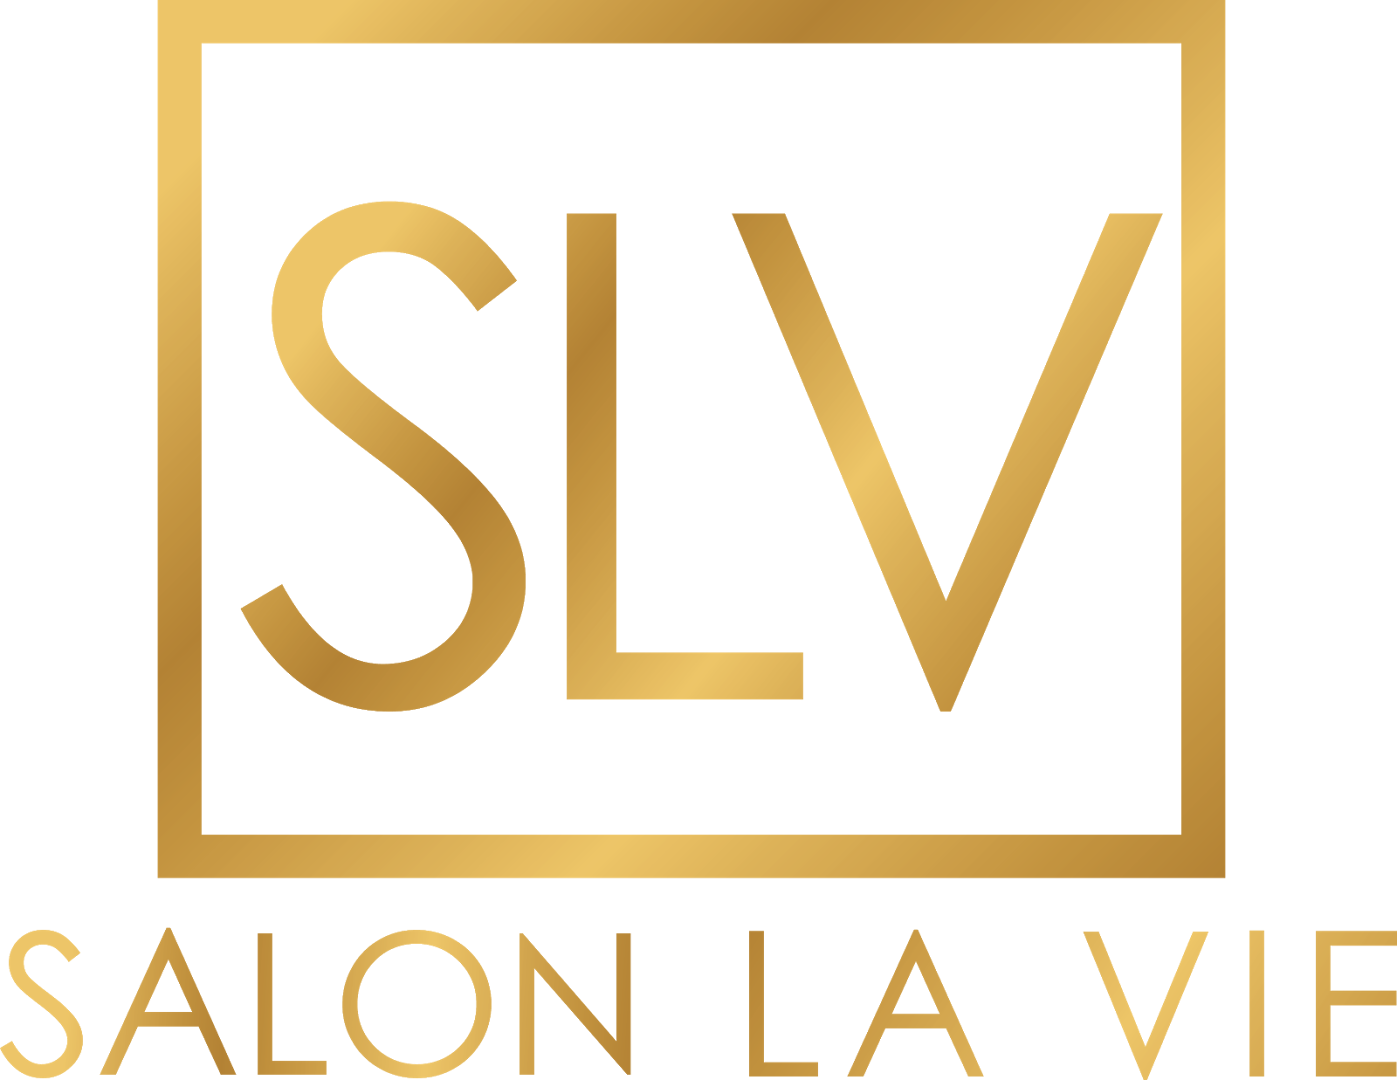 Salon La Vie, LLC